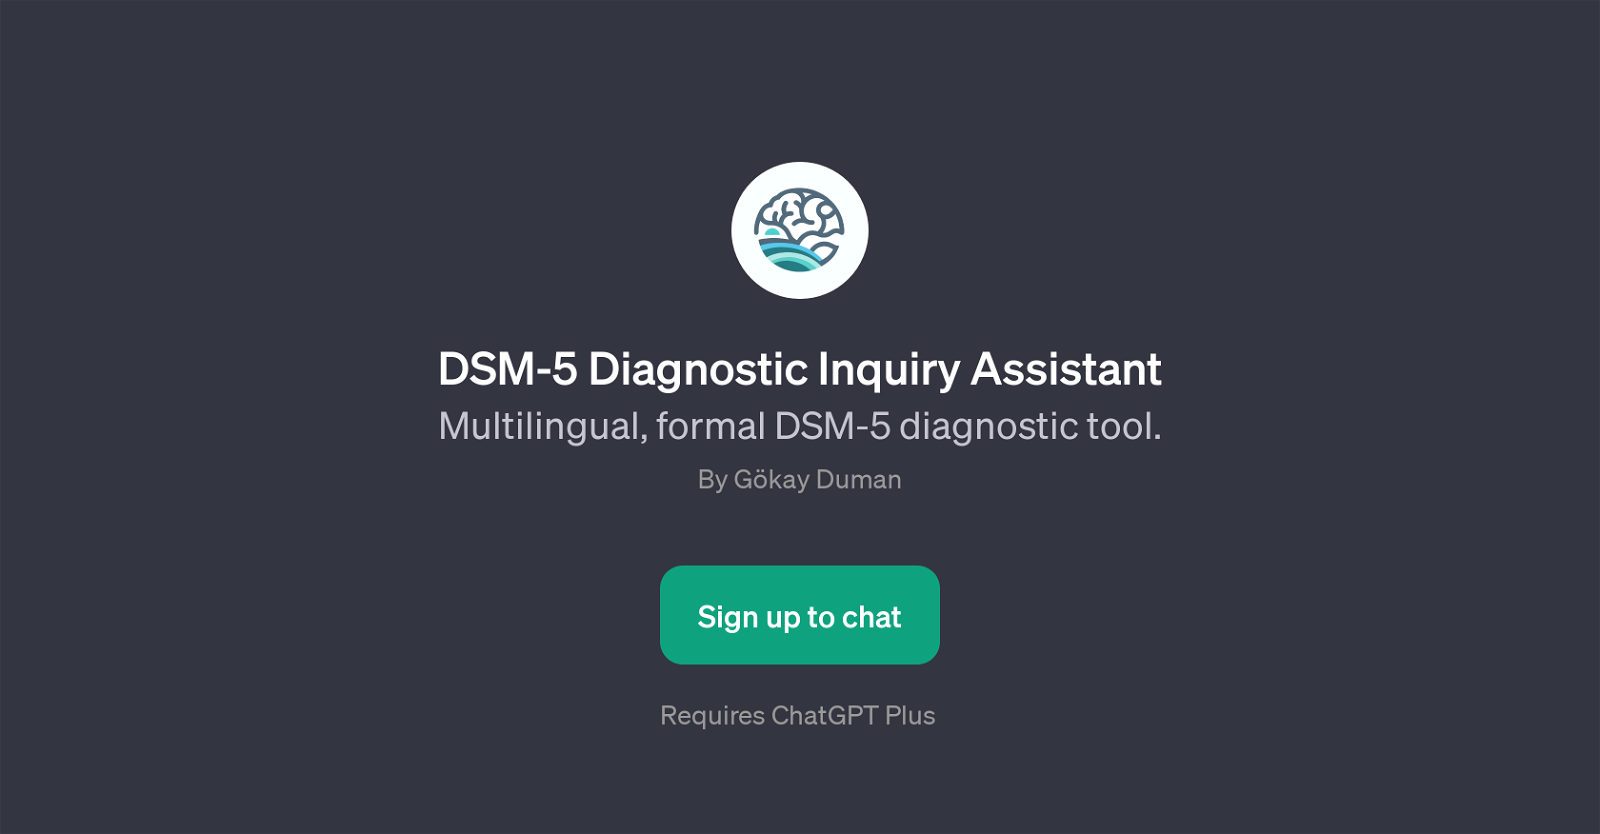 DSM-5 Diagnostic Inquiry Assistant website